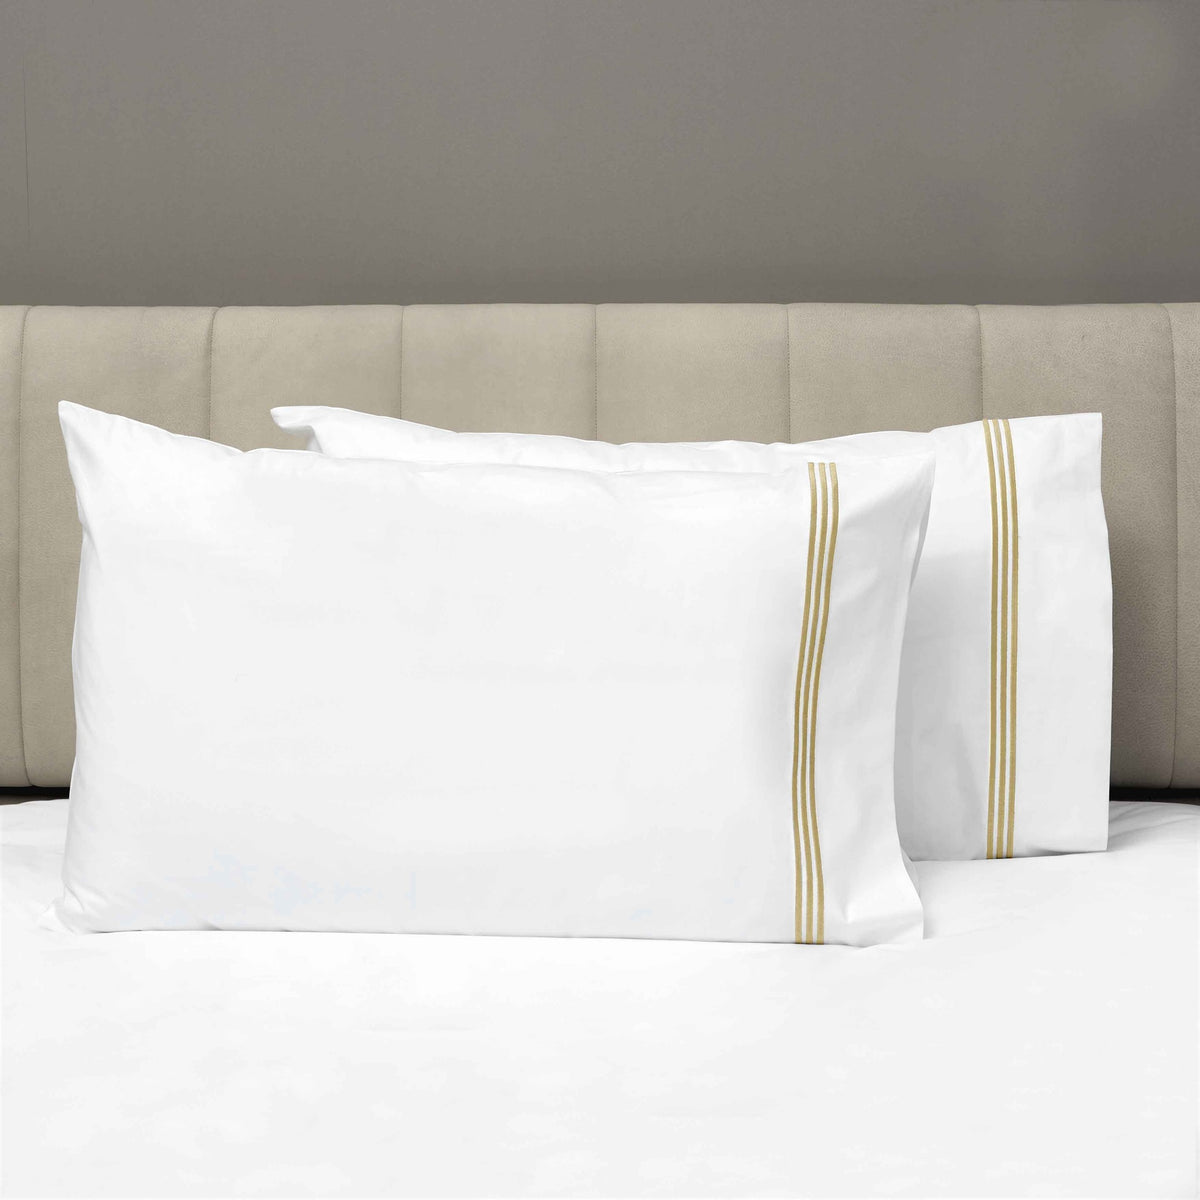 Pair of Pillowcases of Signoria Platinum Percale Bedding in White/Caramel Color